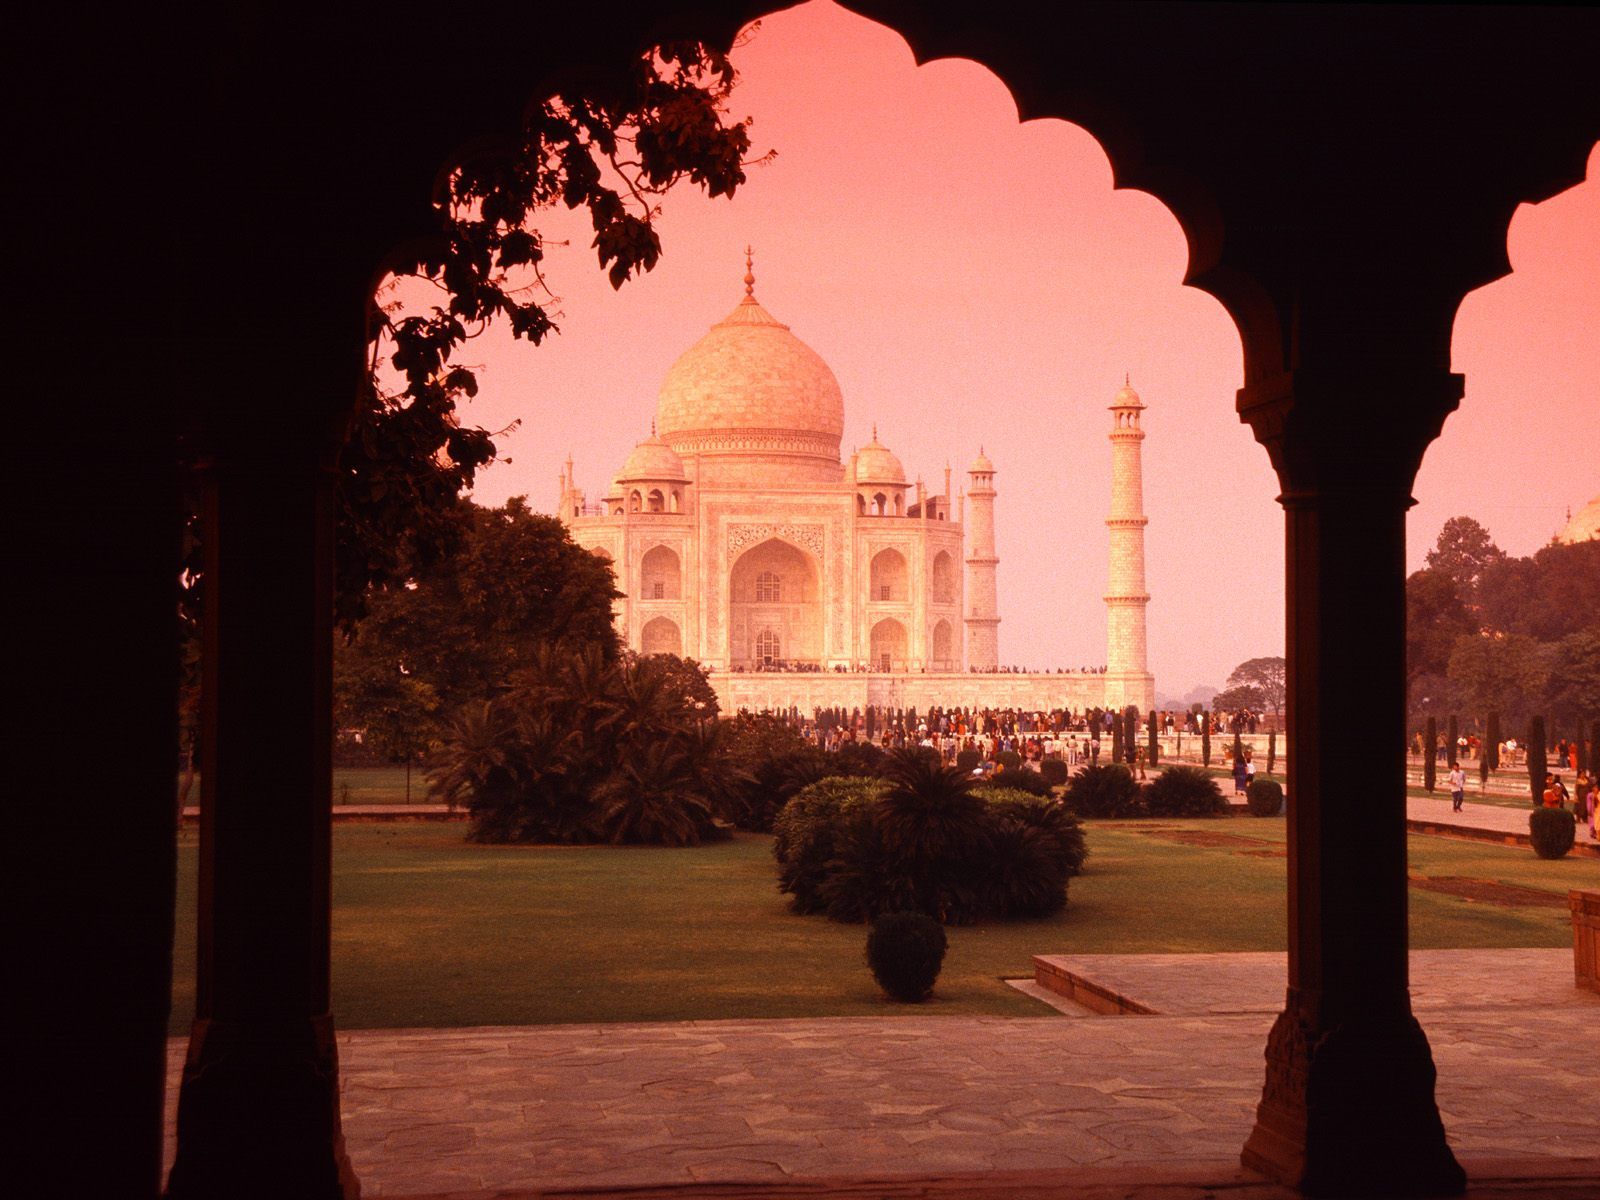 تصویر بنای تاج محل کشور هند یکی از عجایب هفتگانه جدید جهان